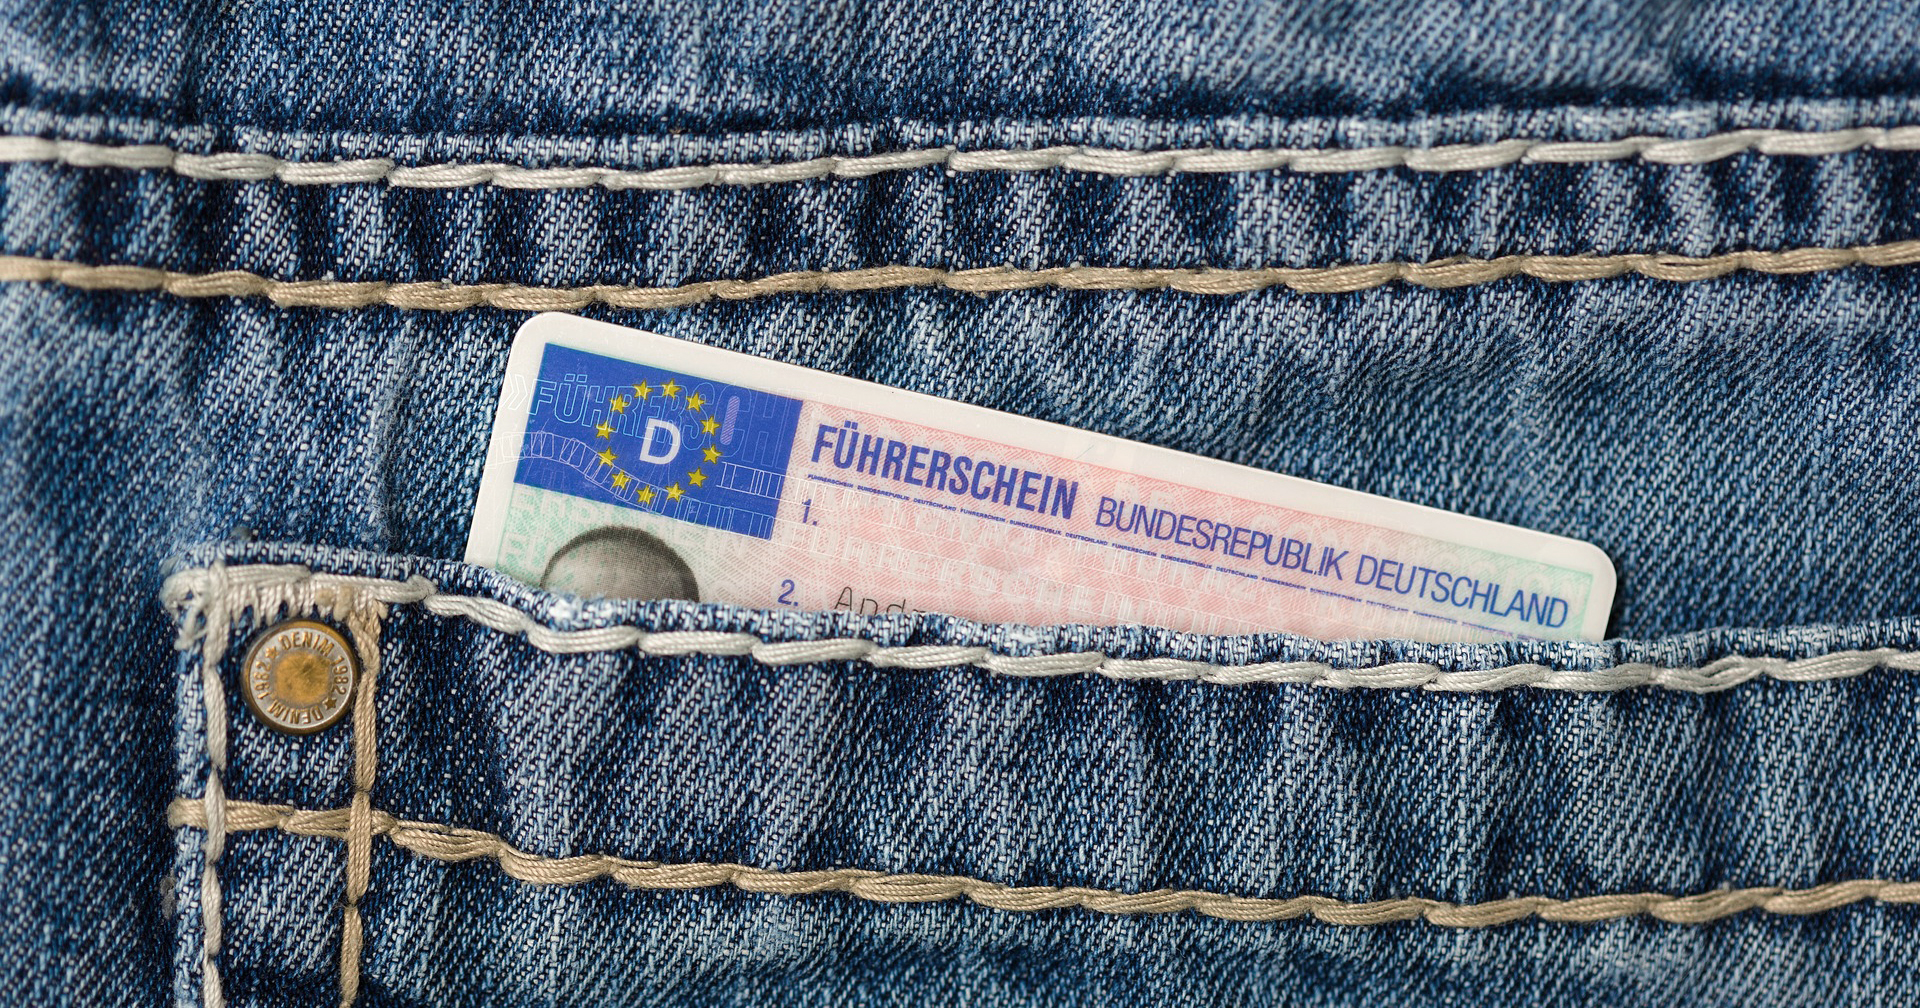 ผู้ใช้ iPhone ในเยอรมนี สามารถเก็บใบขับขี่ในรูปแบบดิจิทัลด้วยแอป ID Wallet ได้